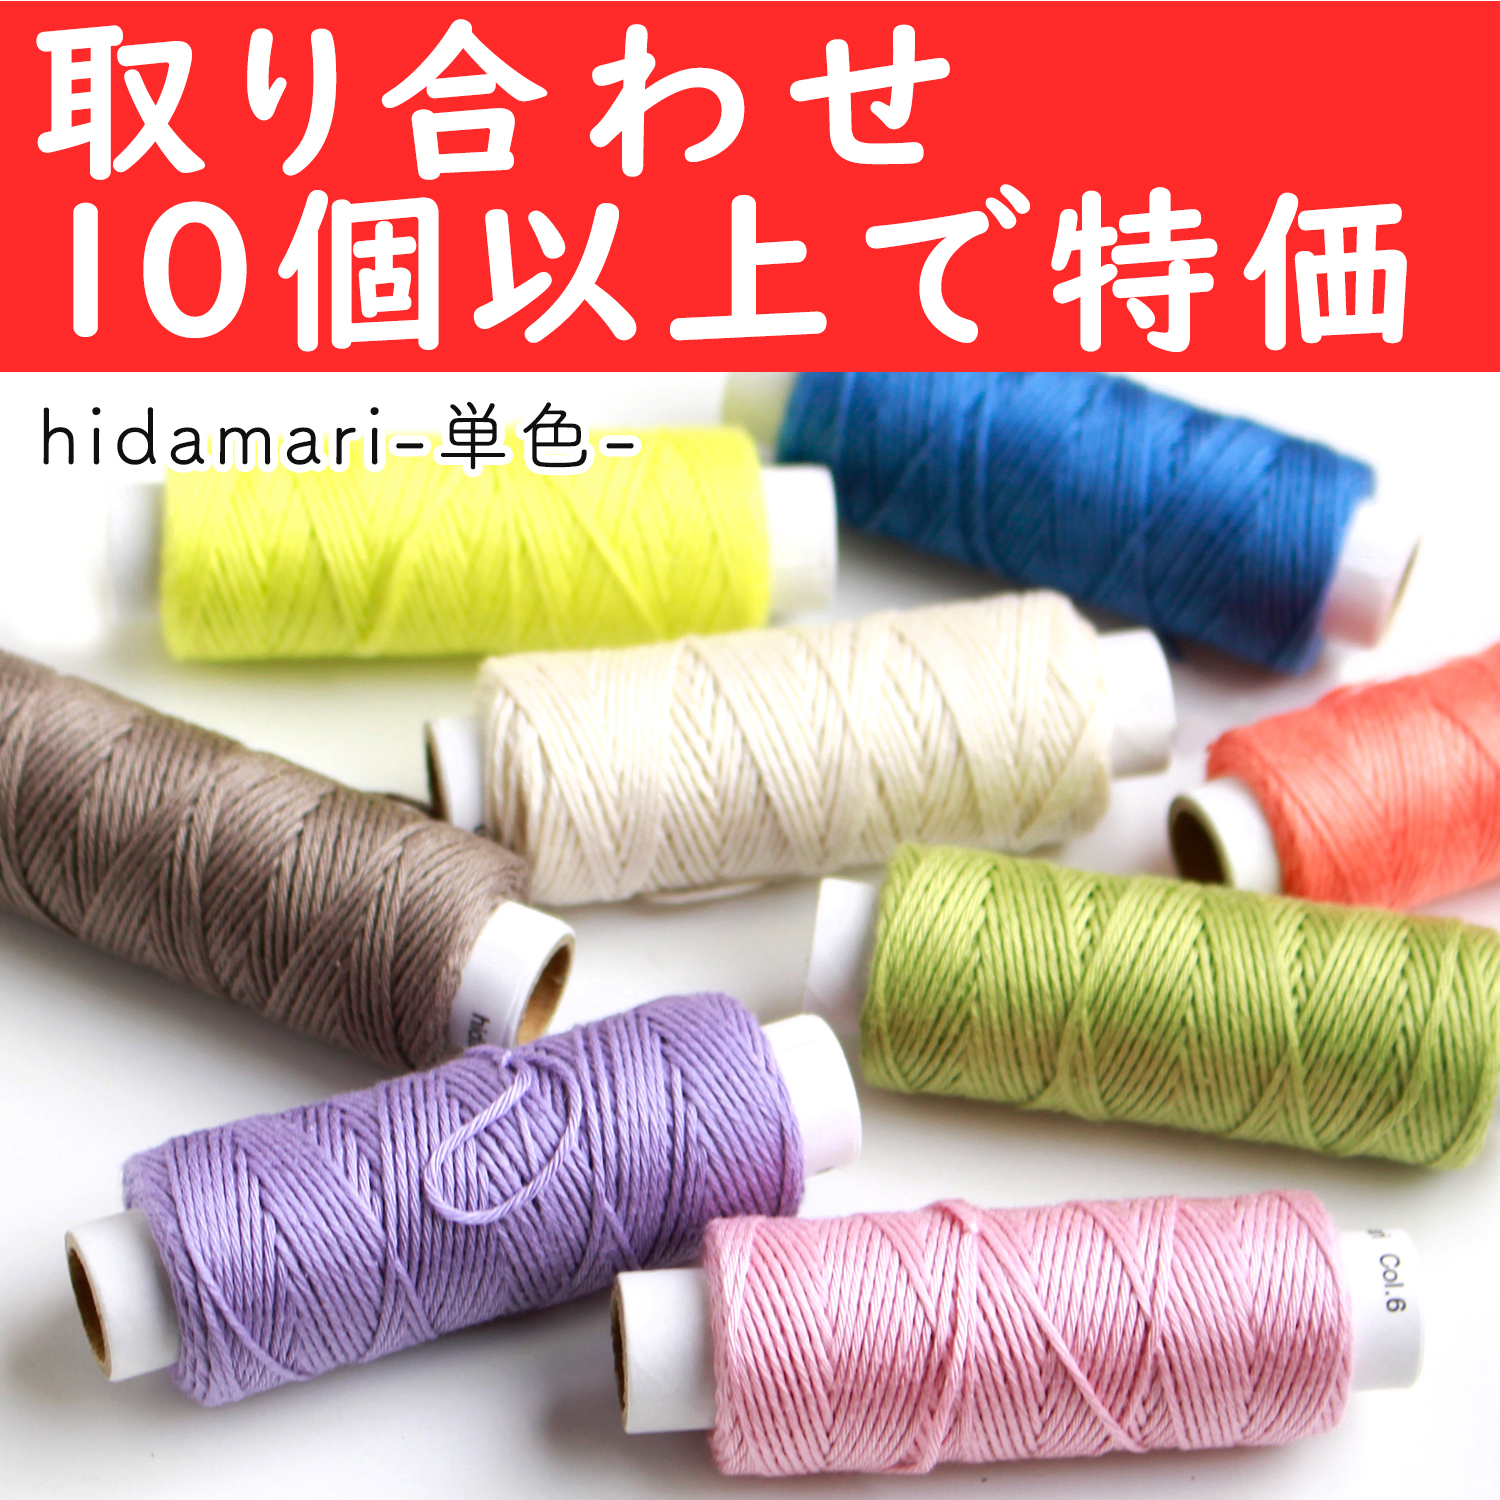 【4月24日まで】CS122301-OVER10 コスモ 刺し子糸(単色) - hidamari - 取り合わせ10個以上で特価 (個)